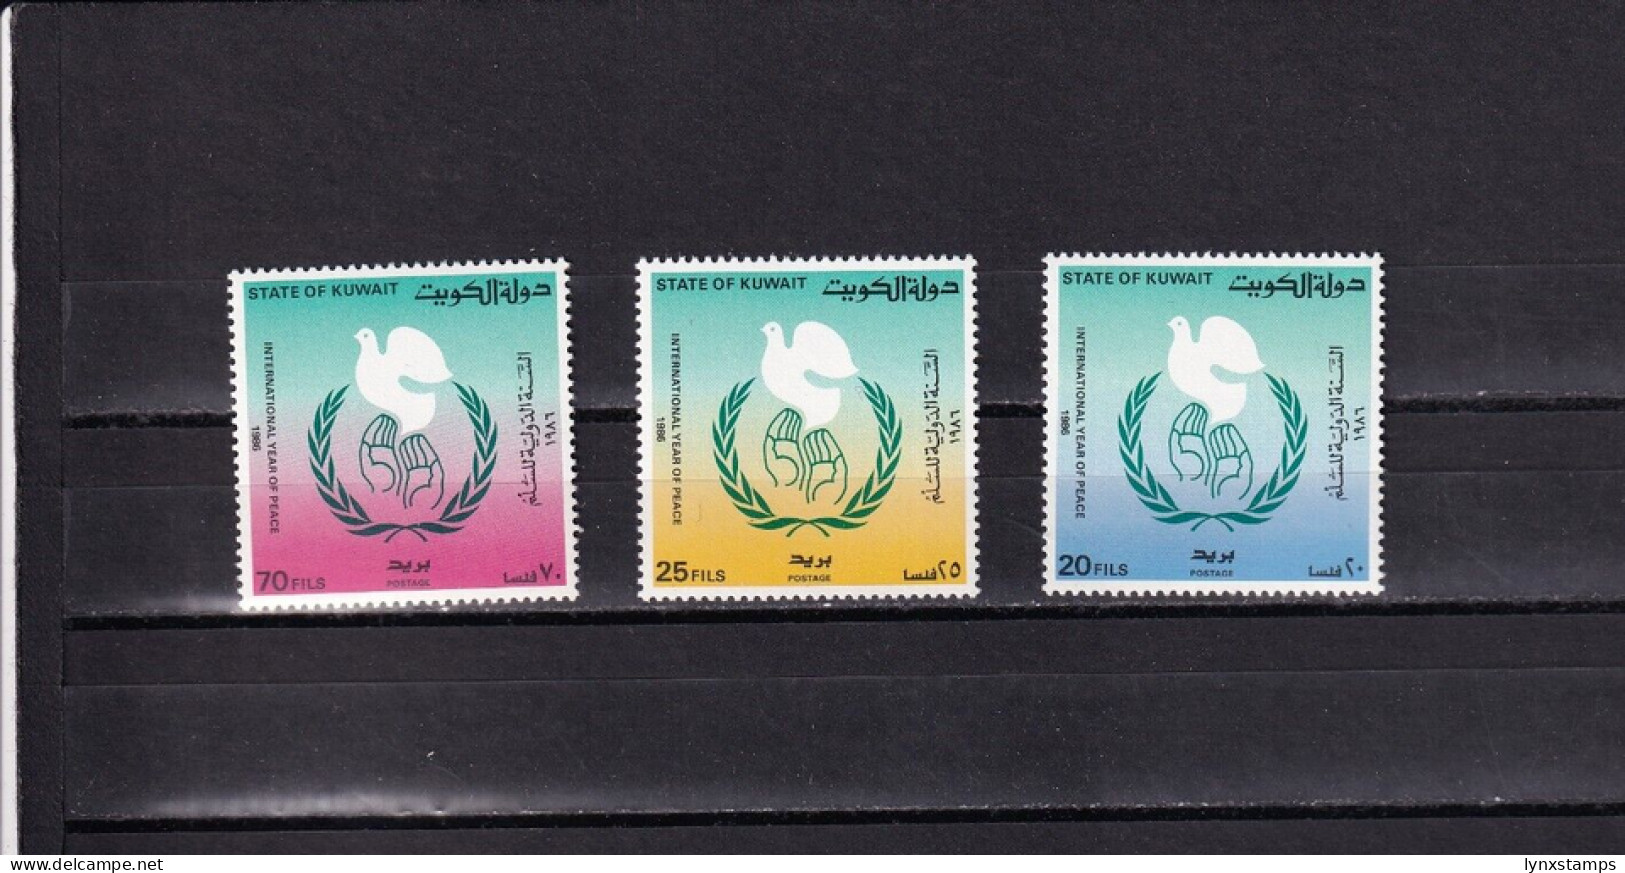 SA03 Kuwait 1986 International Year Of Peace Mint Stamps - Kuwait